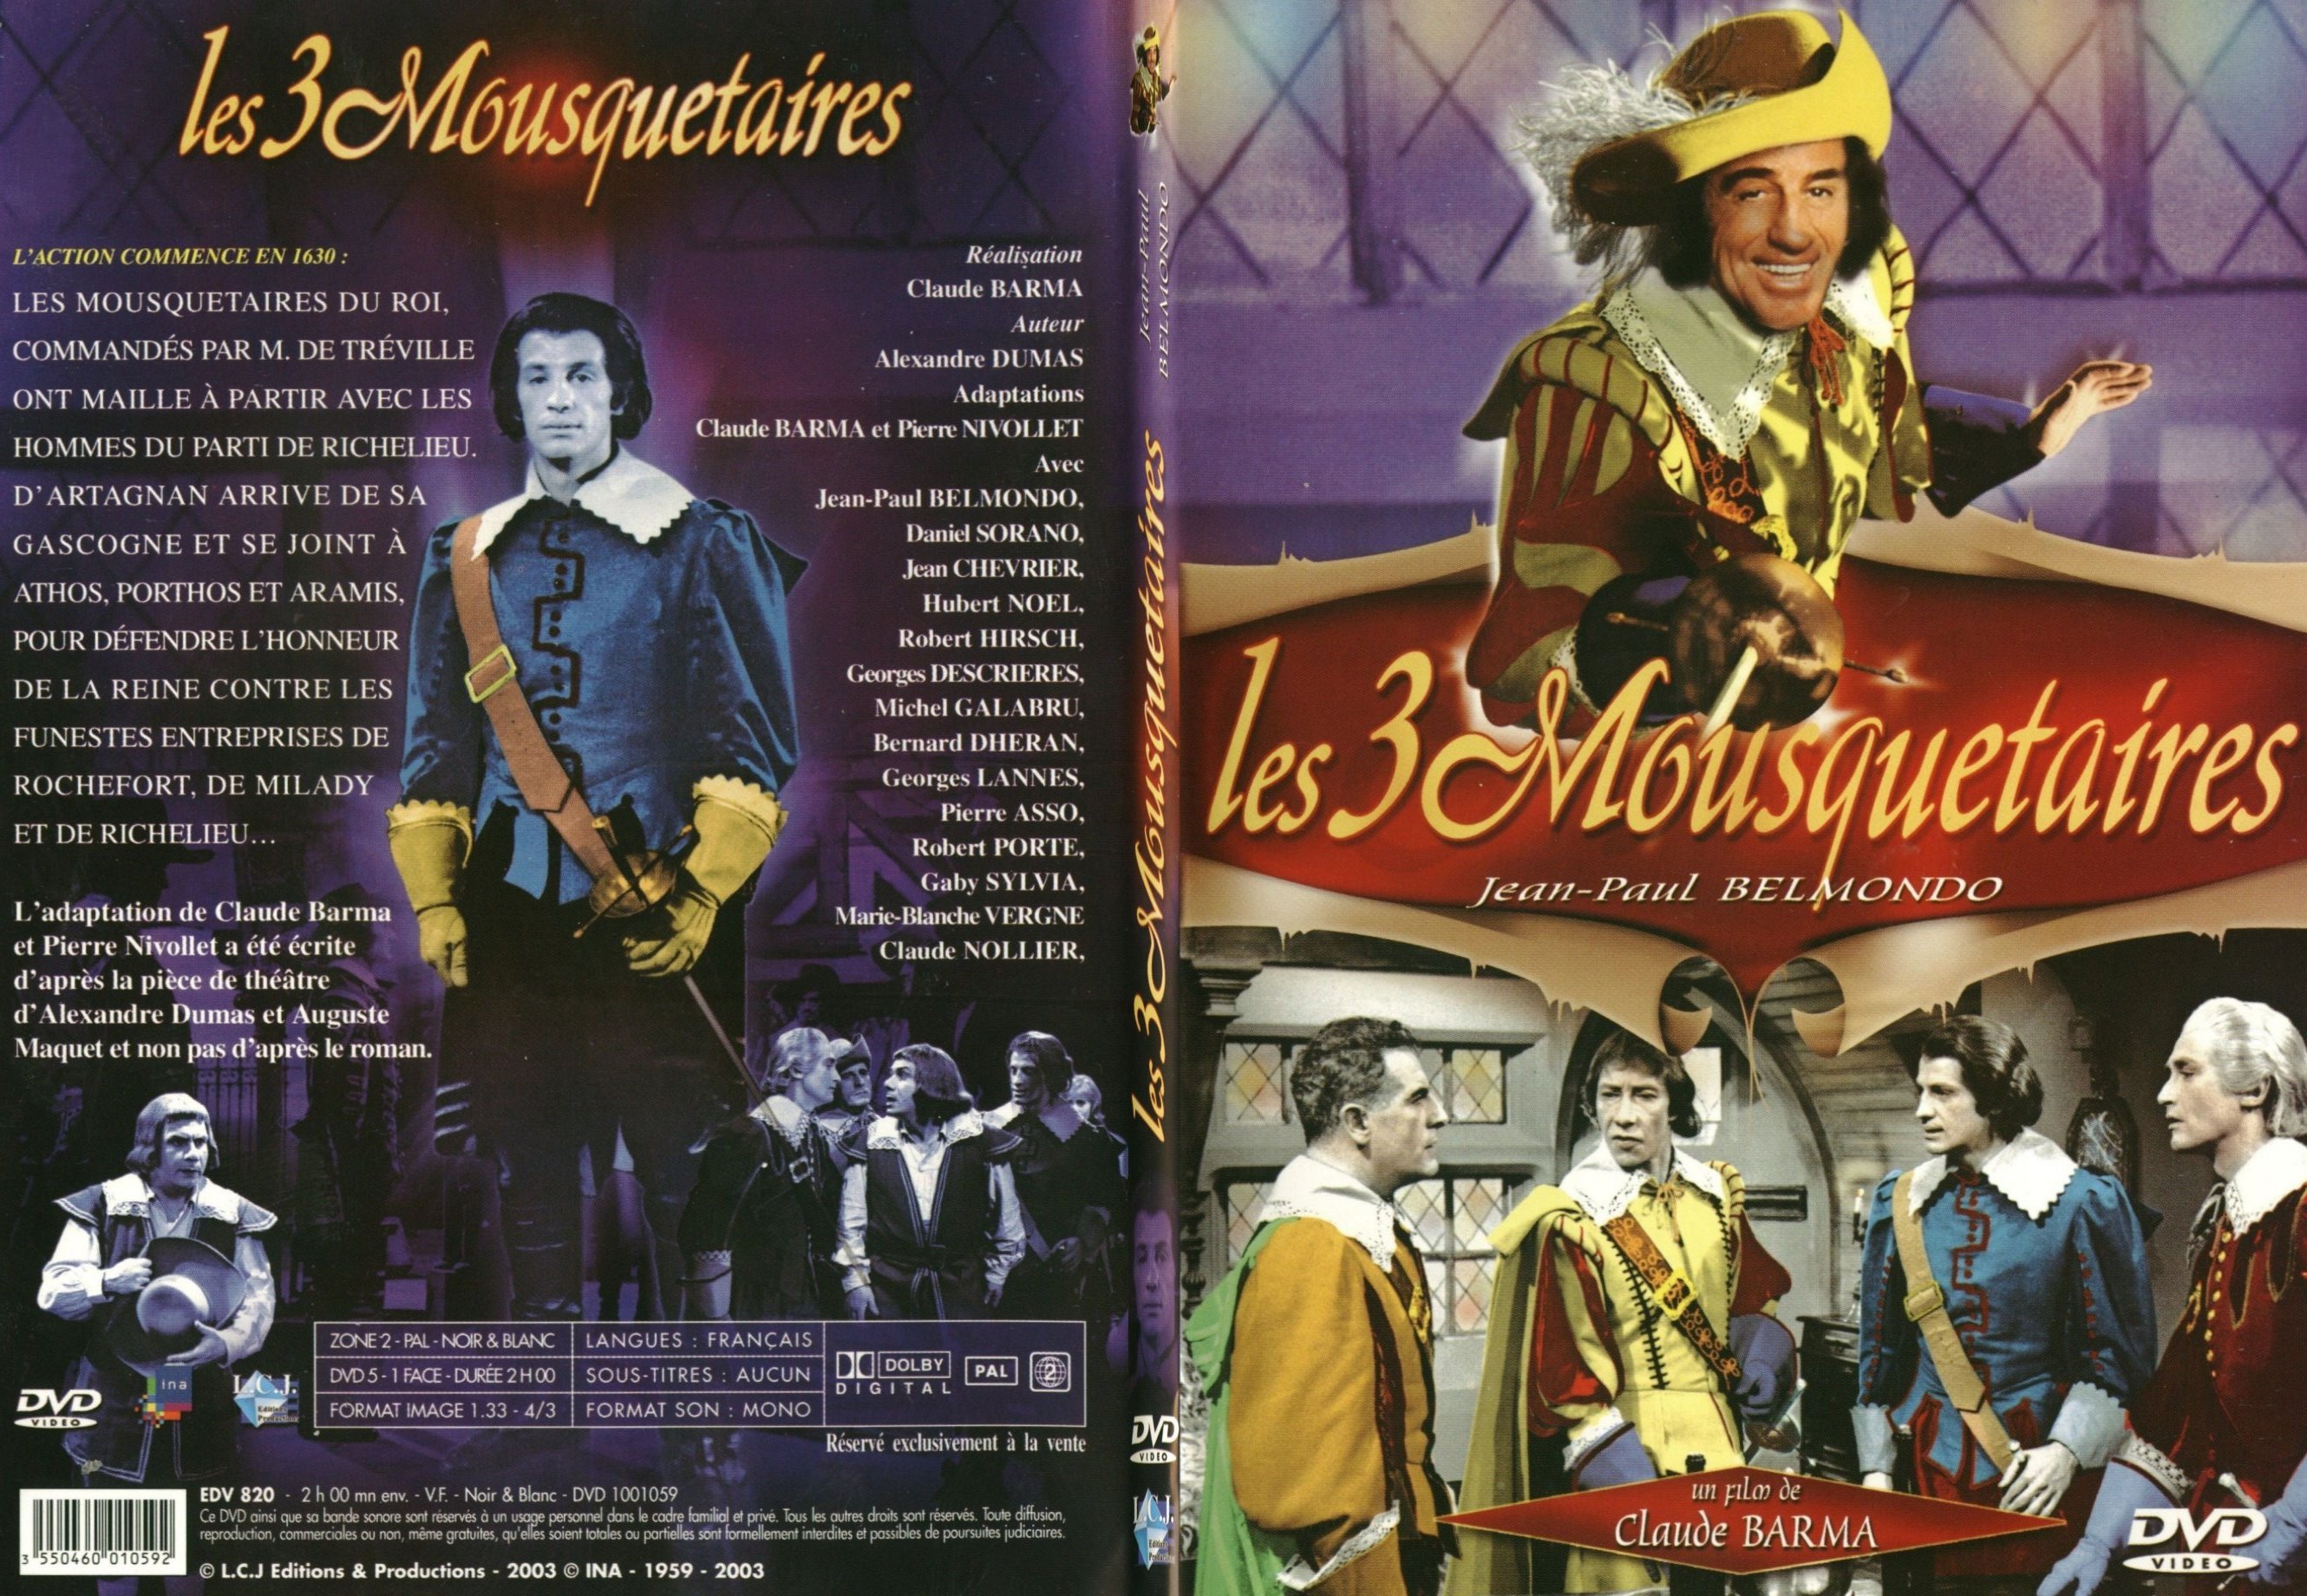 Jaquette DVD Les trois mousquetaires (Belmondo) - SLIM